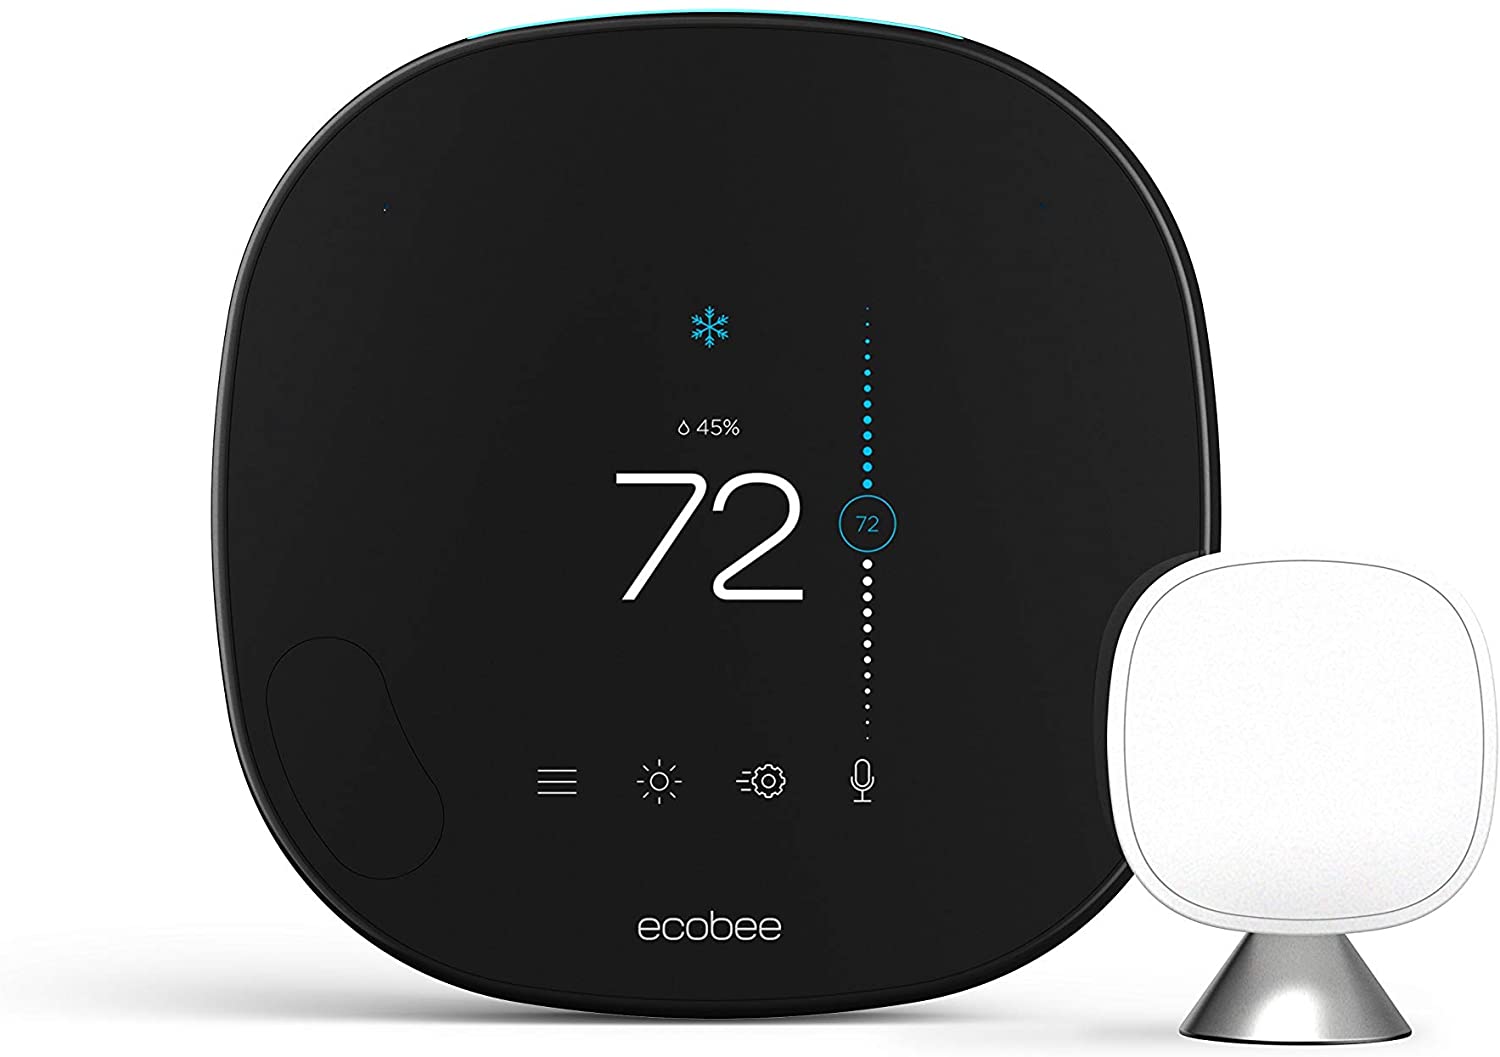 Ecobee smart thermostatss